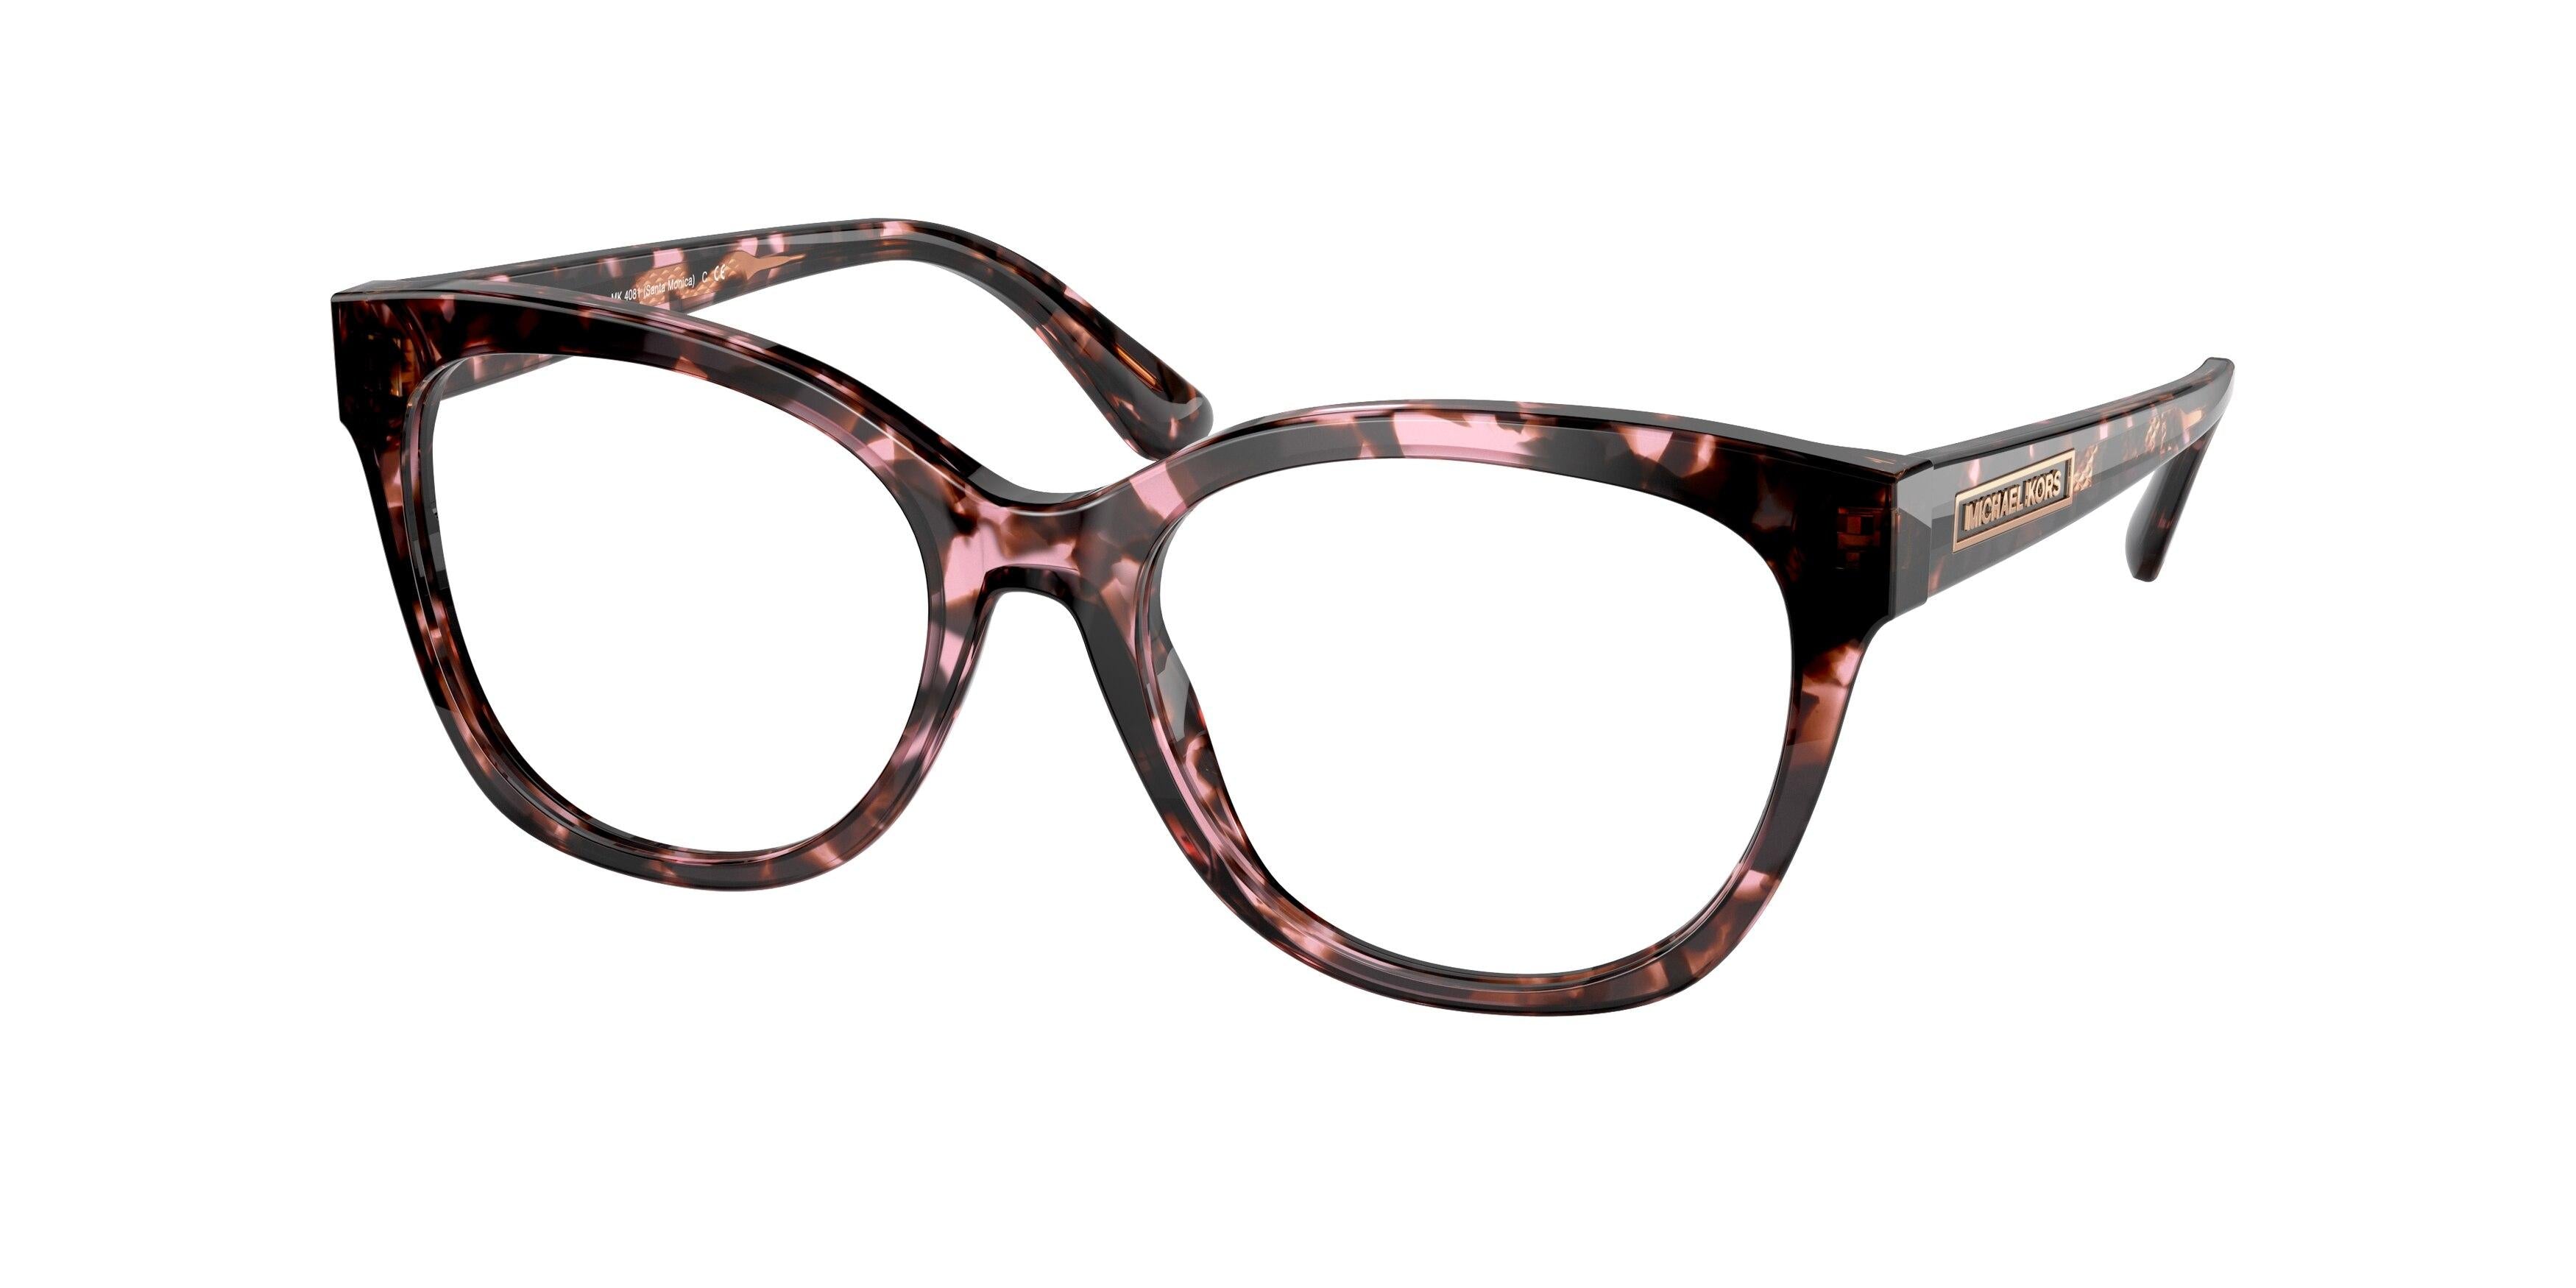 Michael Kors Santa Monica 4081 Eyeglasses – 